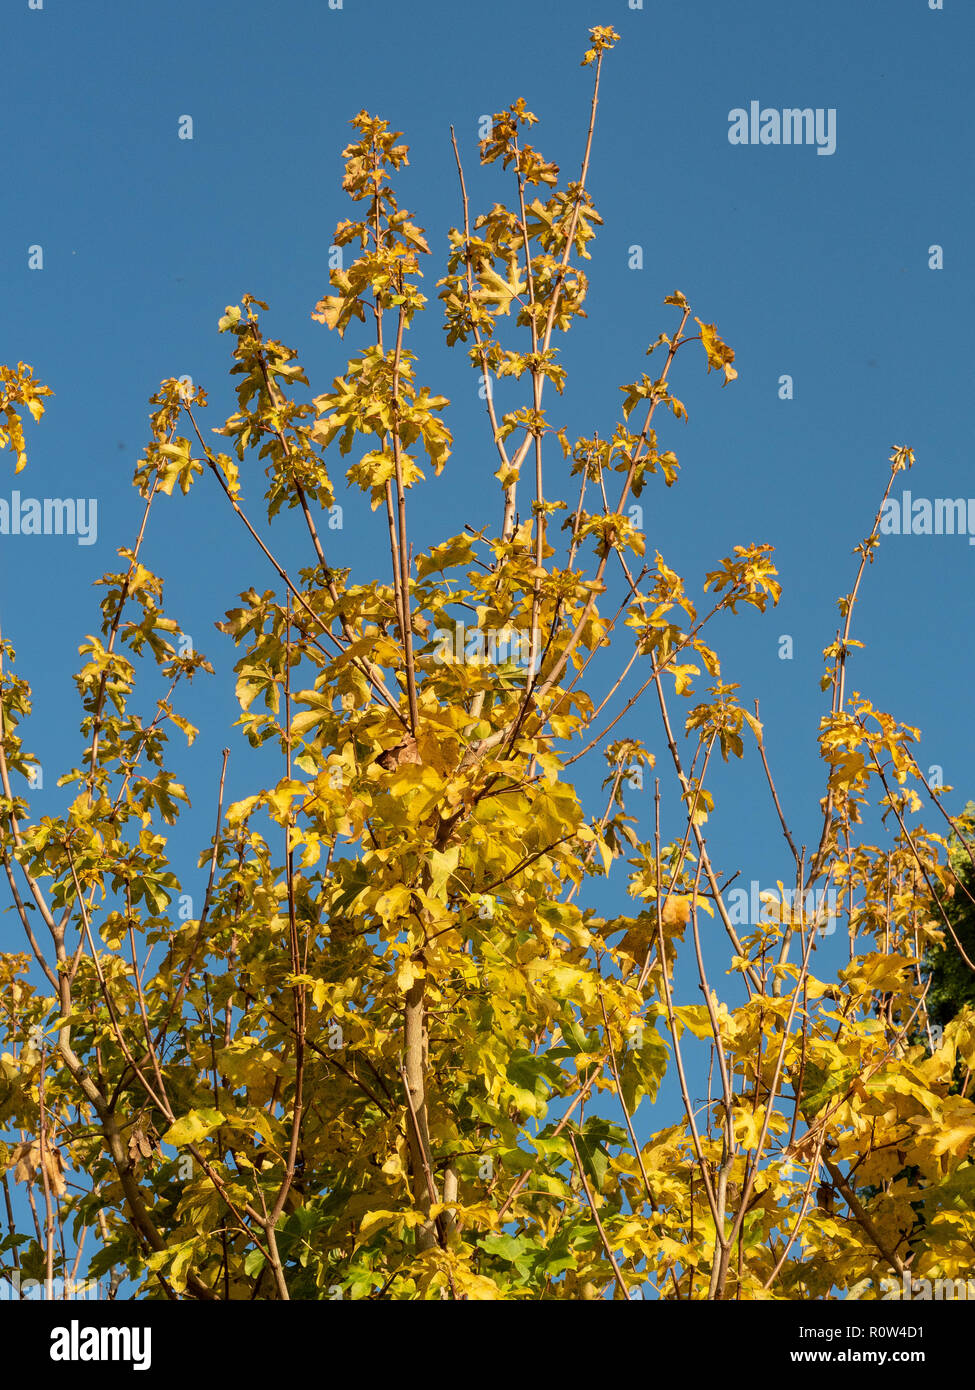 El follaje dorado del campo maple Acer campestre brillando en la luz del sol de otoño contra un cielo azul claro Foto de stock